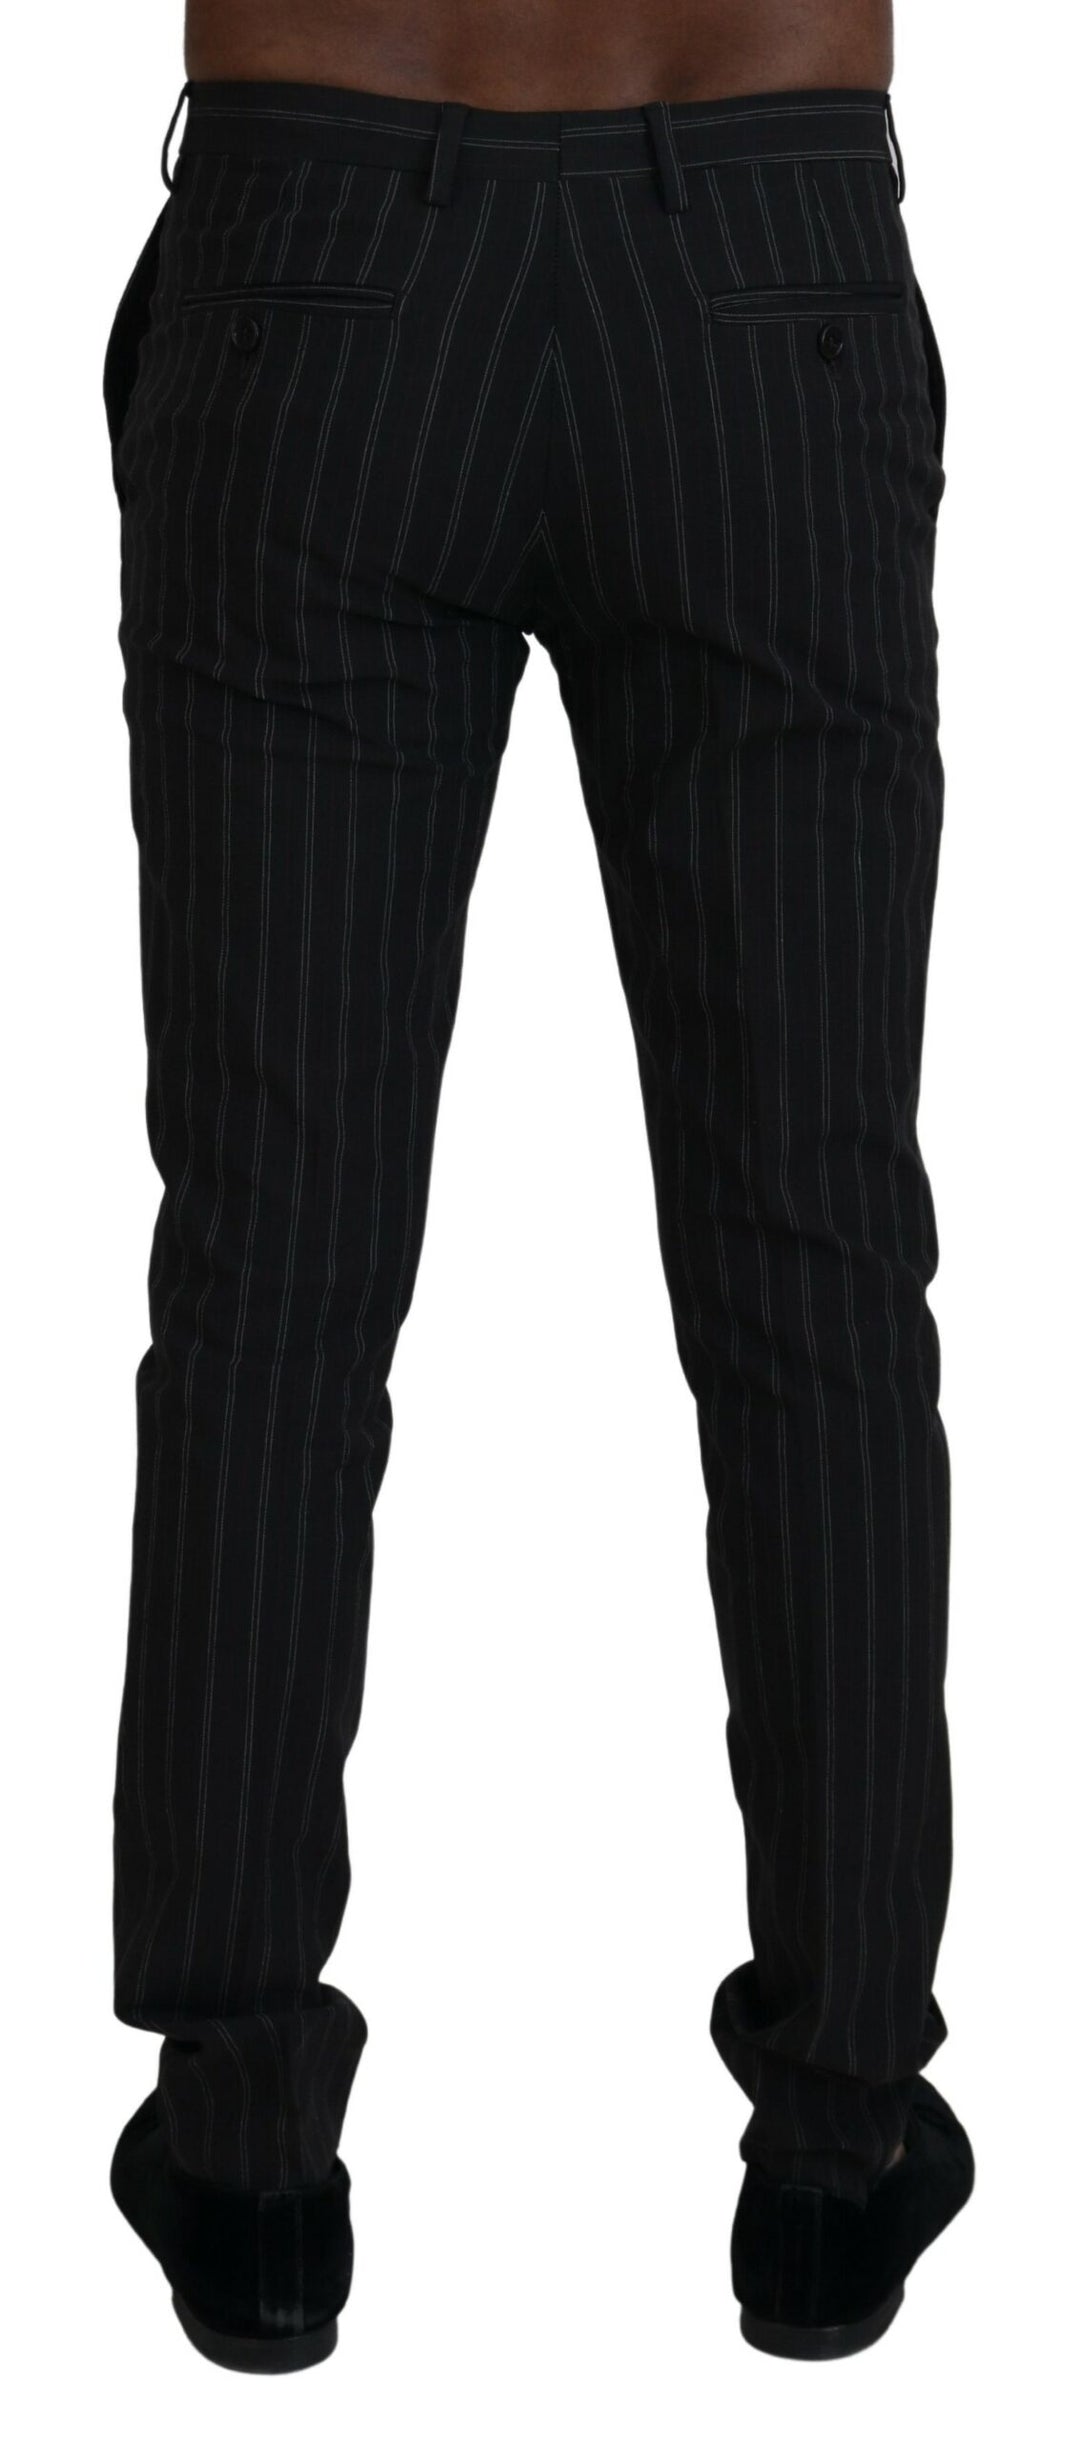 BENCIVENGA Elegant Striped Viscose Dress Pants for Men